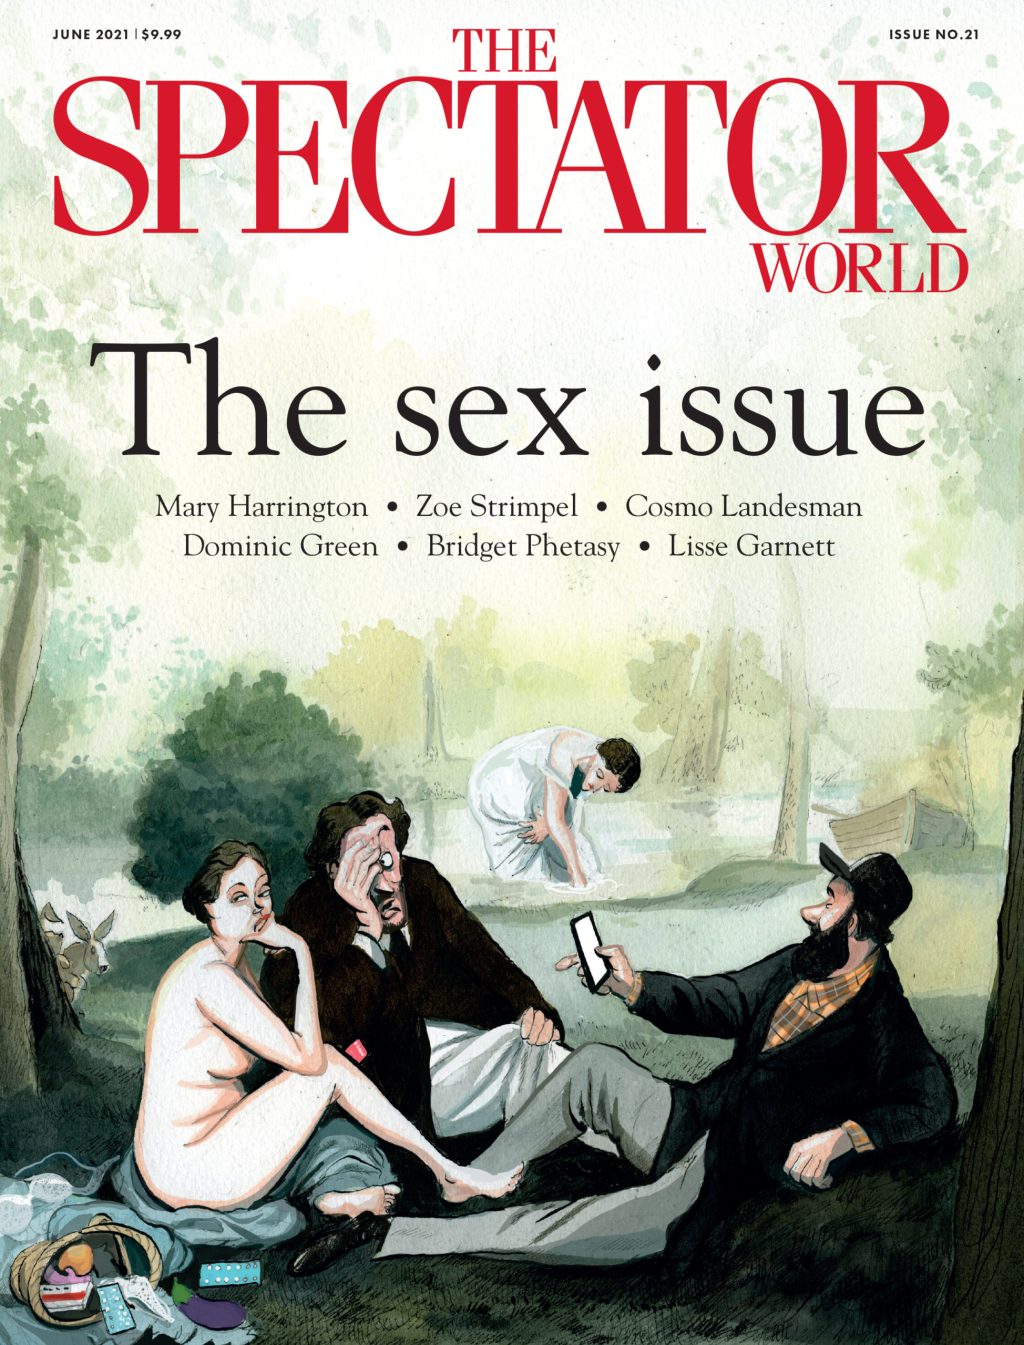 Underground Porn Magazines Onion - June - The Spectator World